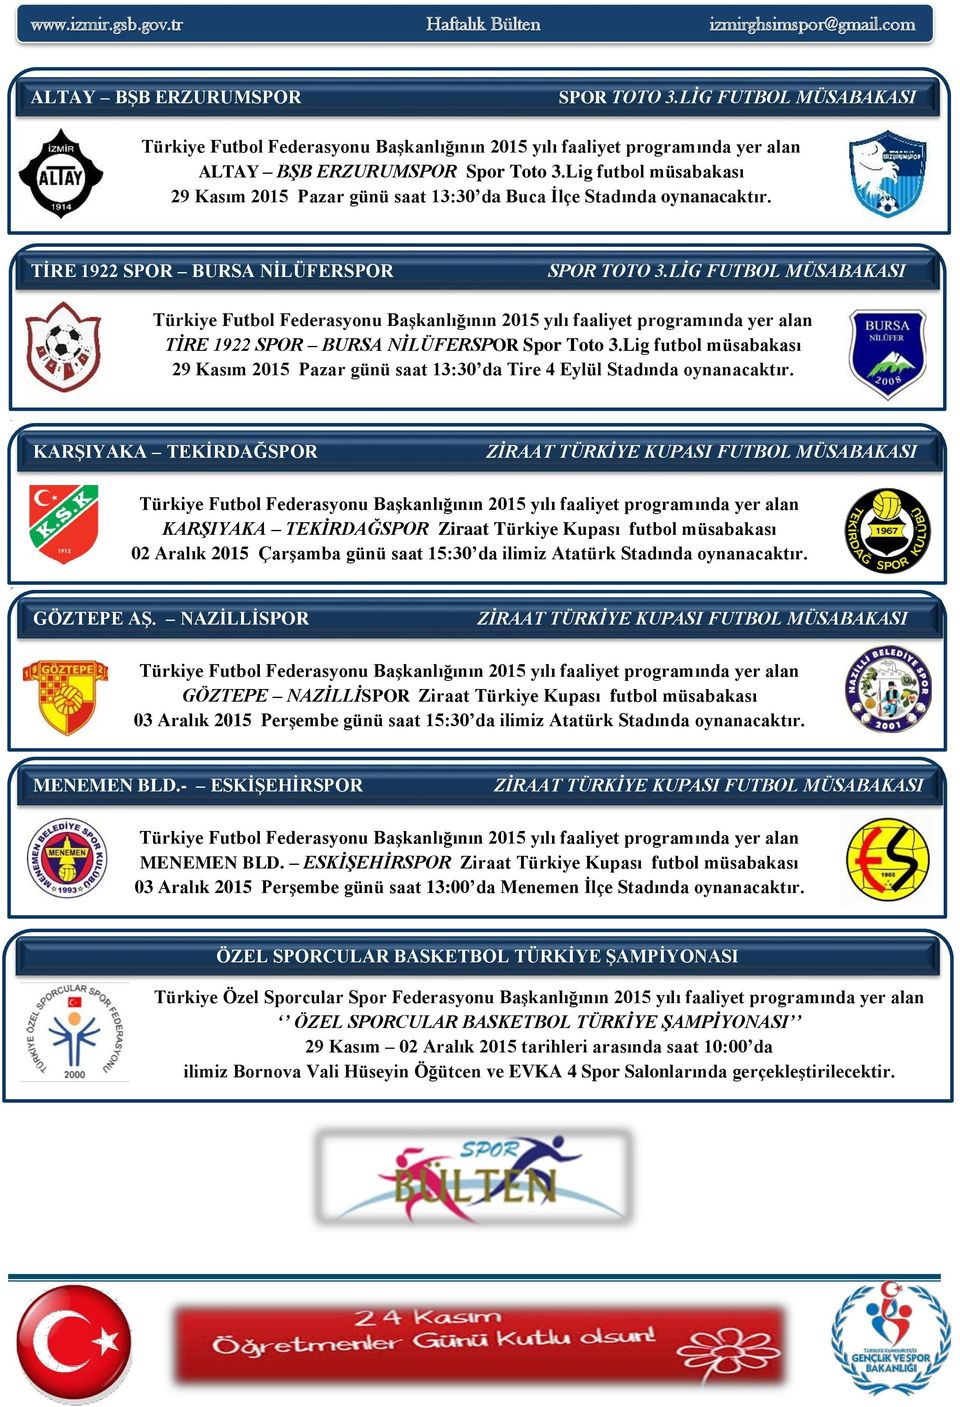 Türkiye Futbol Federasyonu Başkanlığının 2015 yılı faaliyet programında yer alan TİRE 1922 SPOR BURSA NİLÜFERSPOR Spor Toto 3.